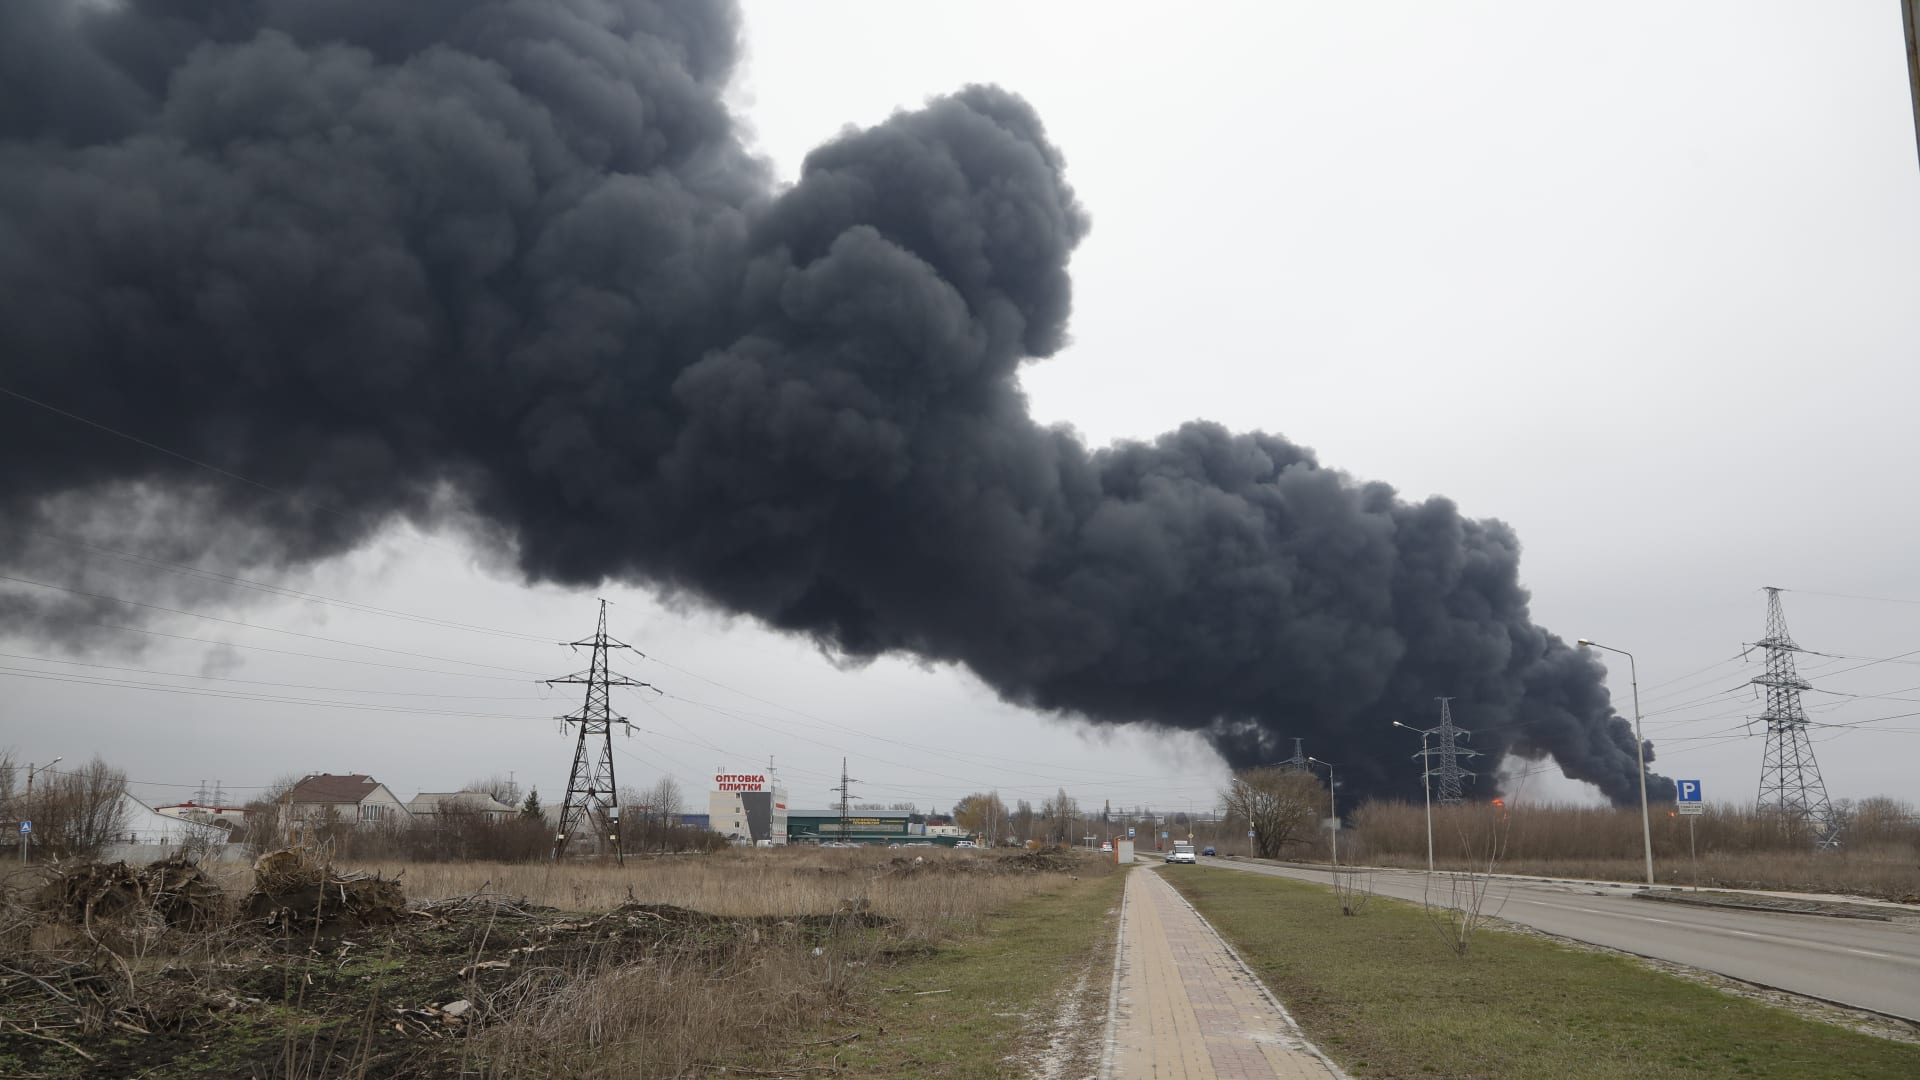 لحظة استهداف مخزن وقود داخل روسيا بمروحيتين يزعم أنهما لأوكرانيا